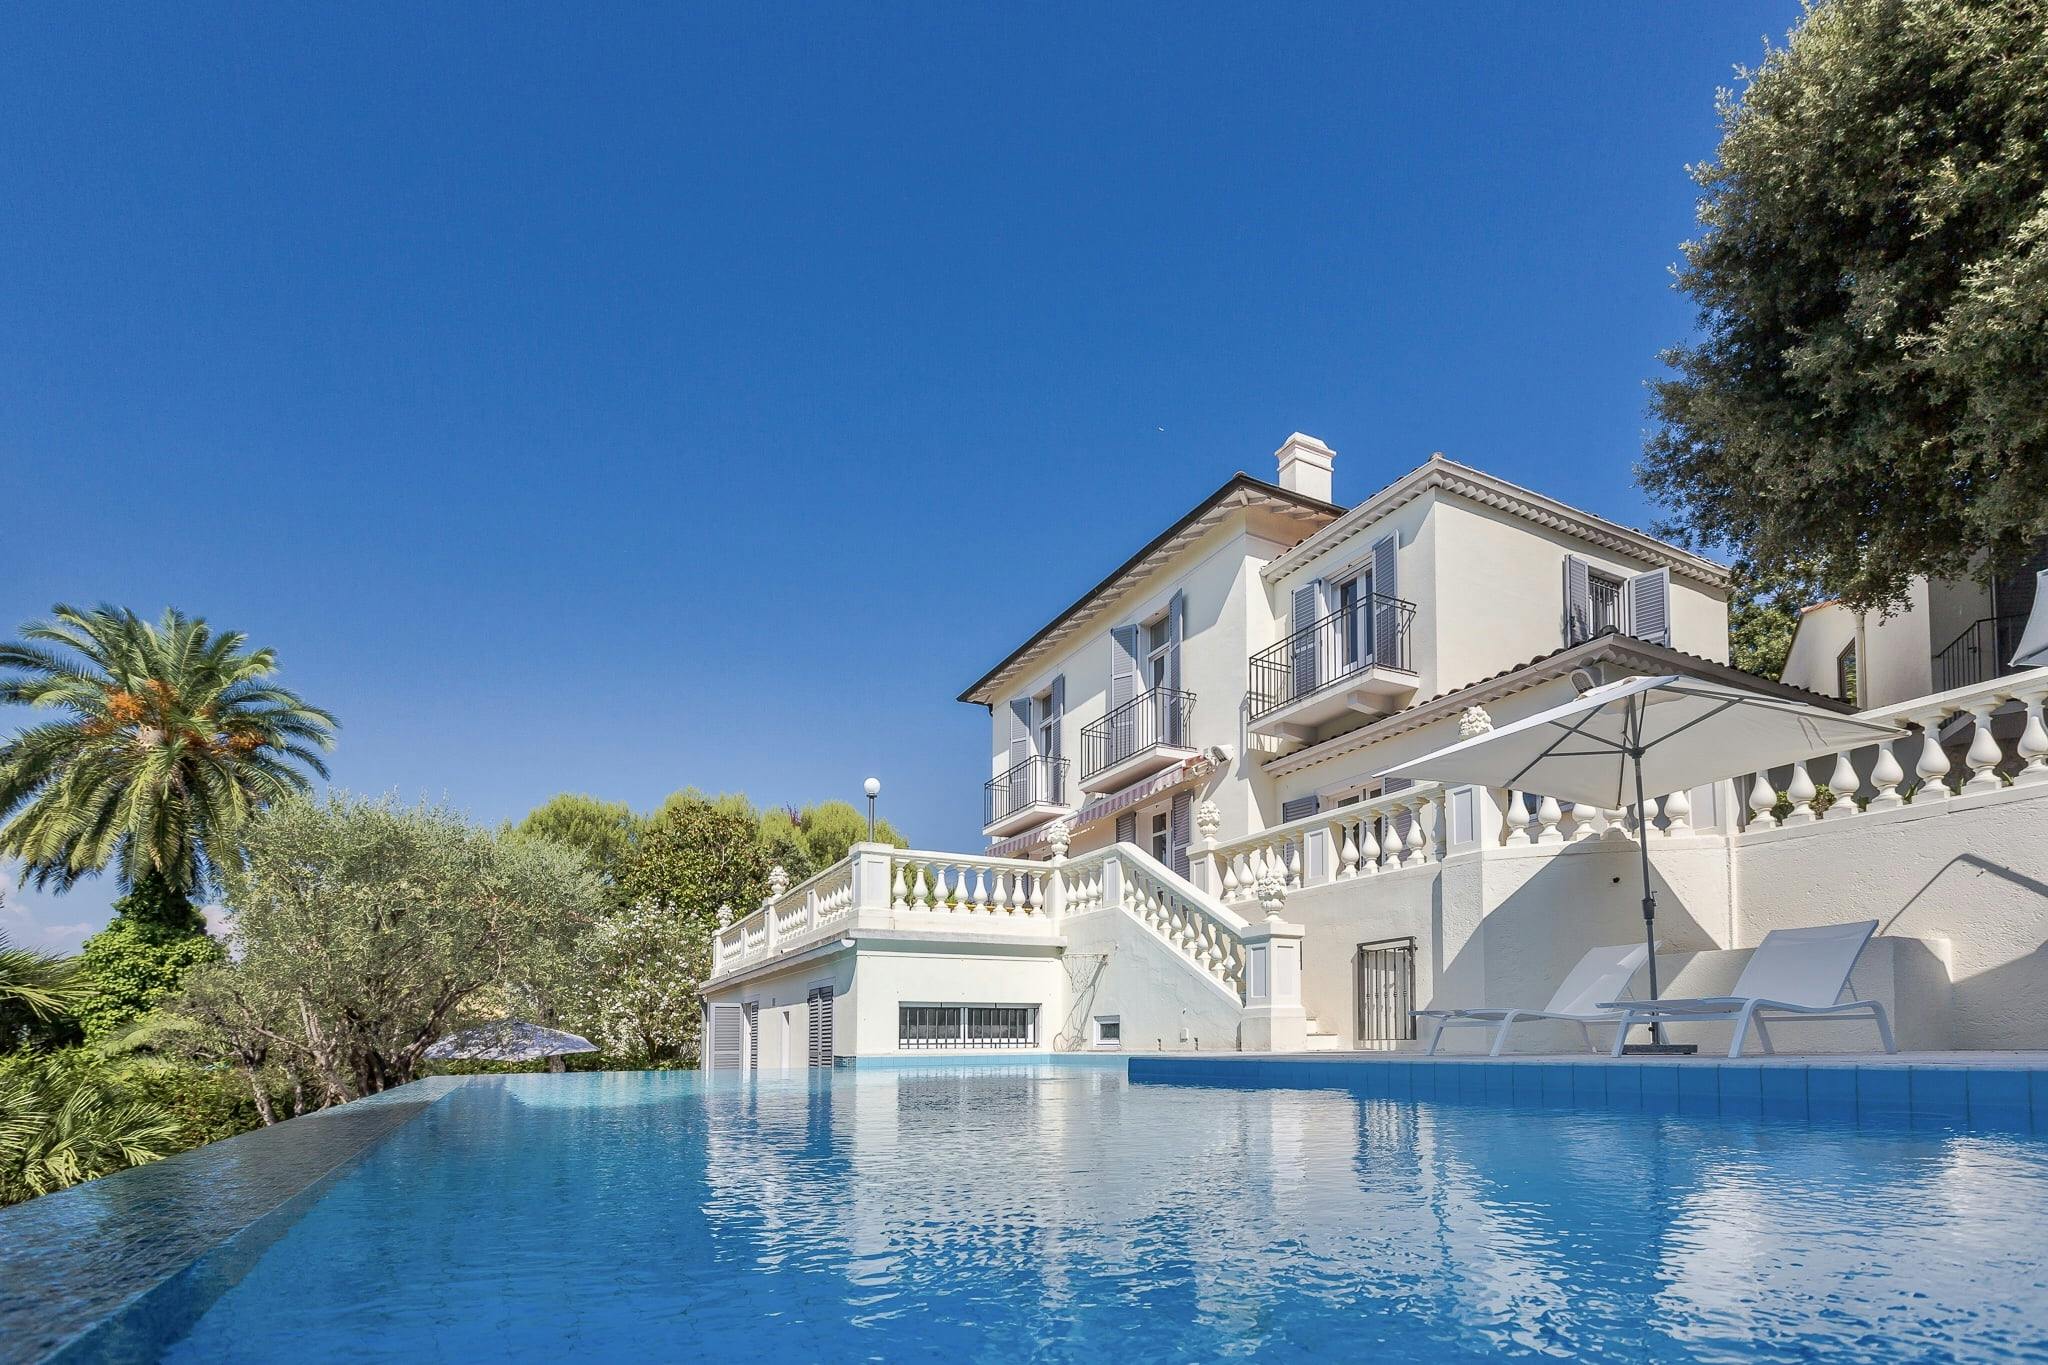 Villa Cosima et sa façade blanche, piscine en premier plan et ciel bleu